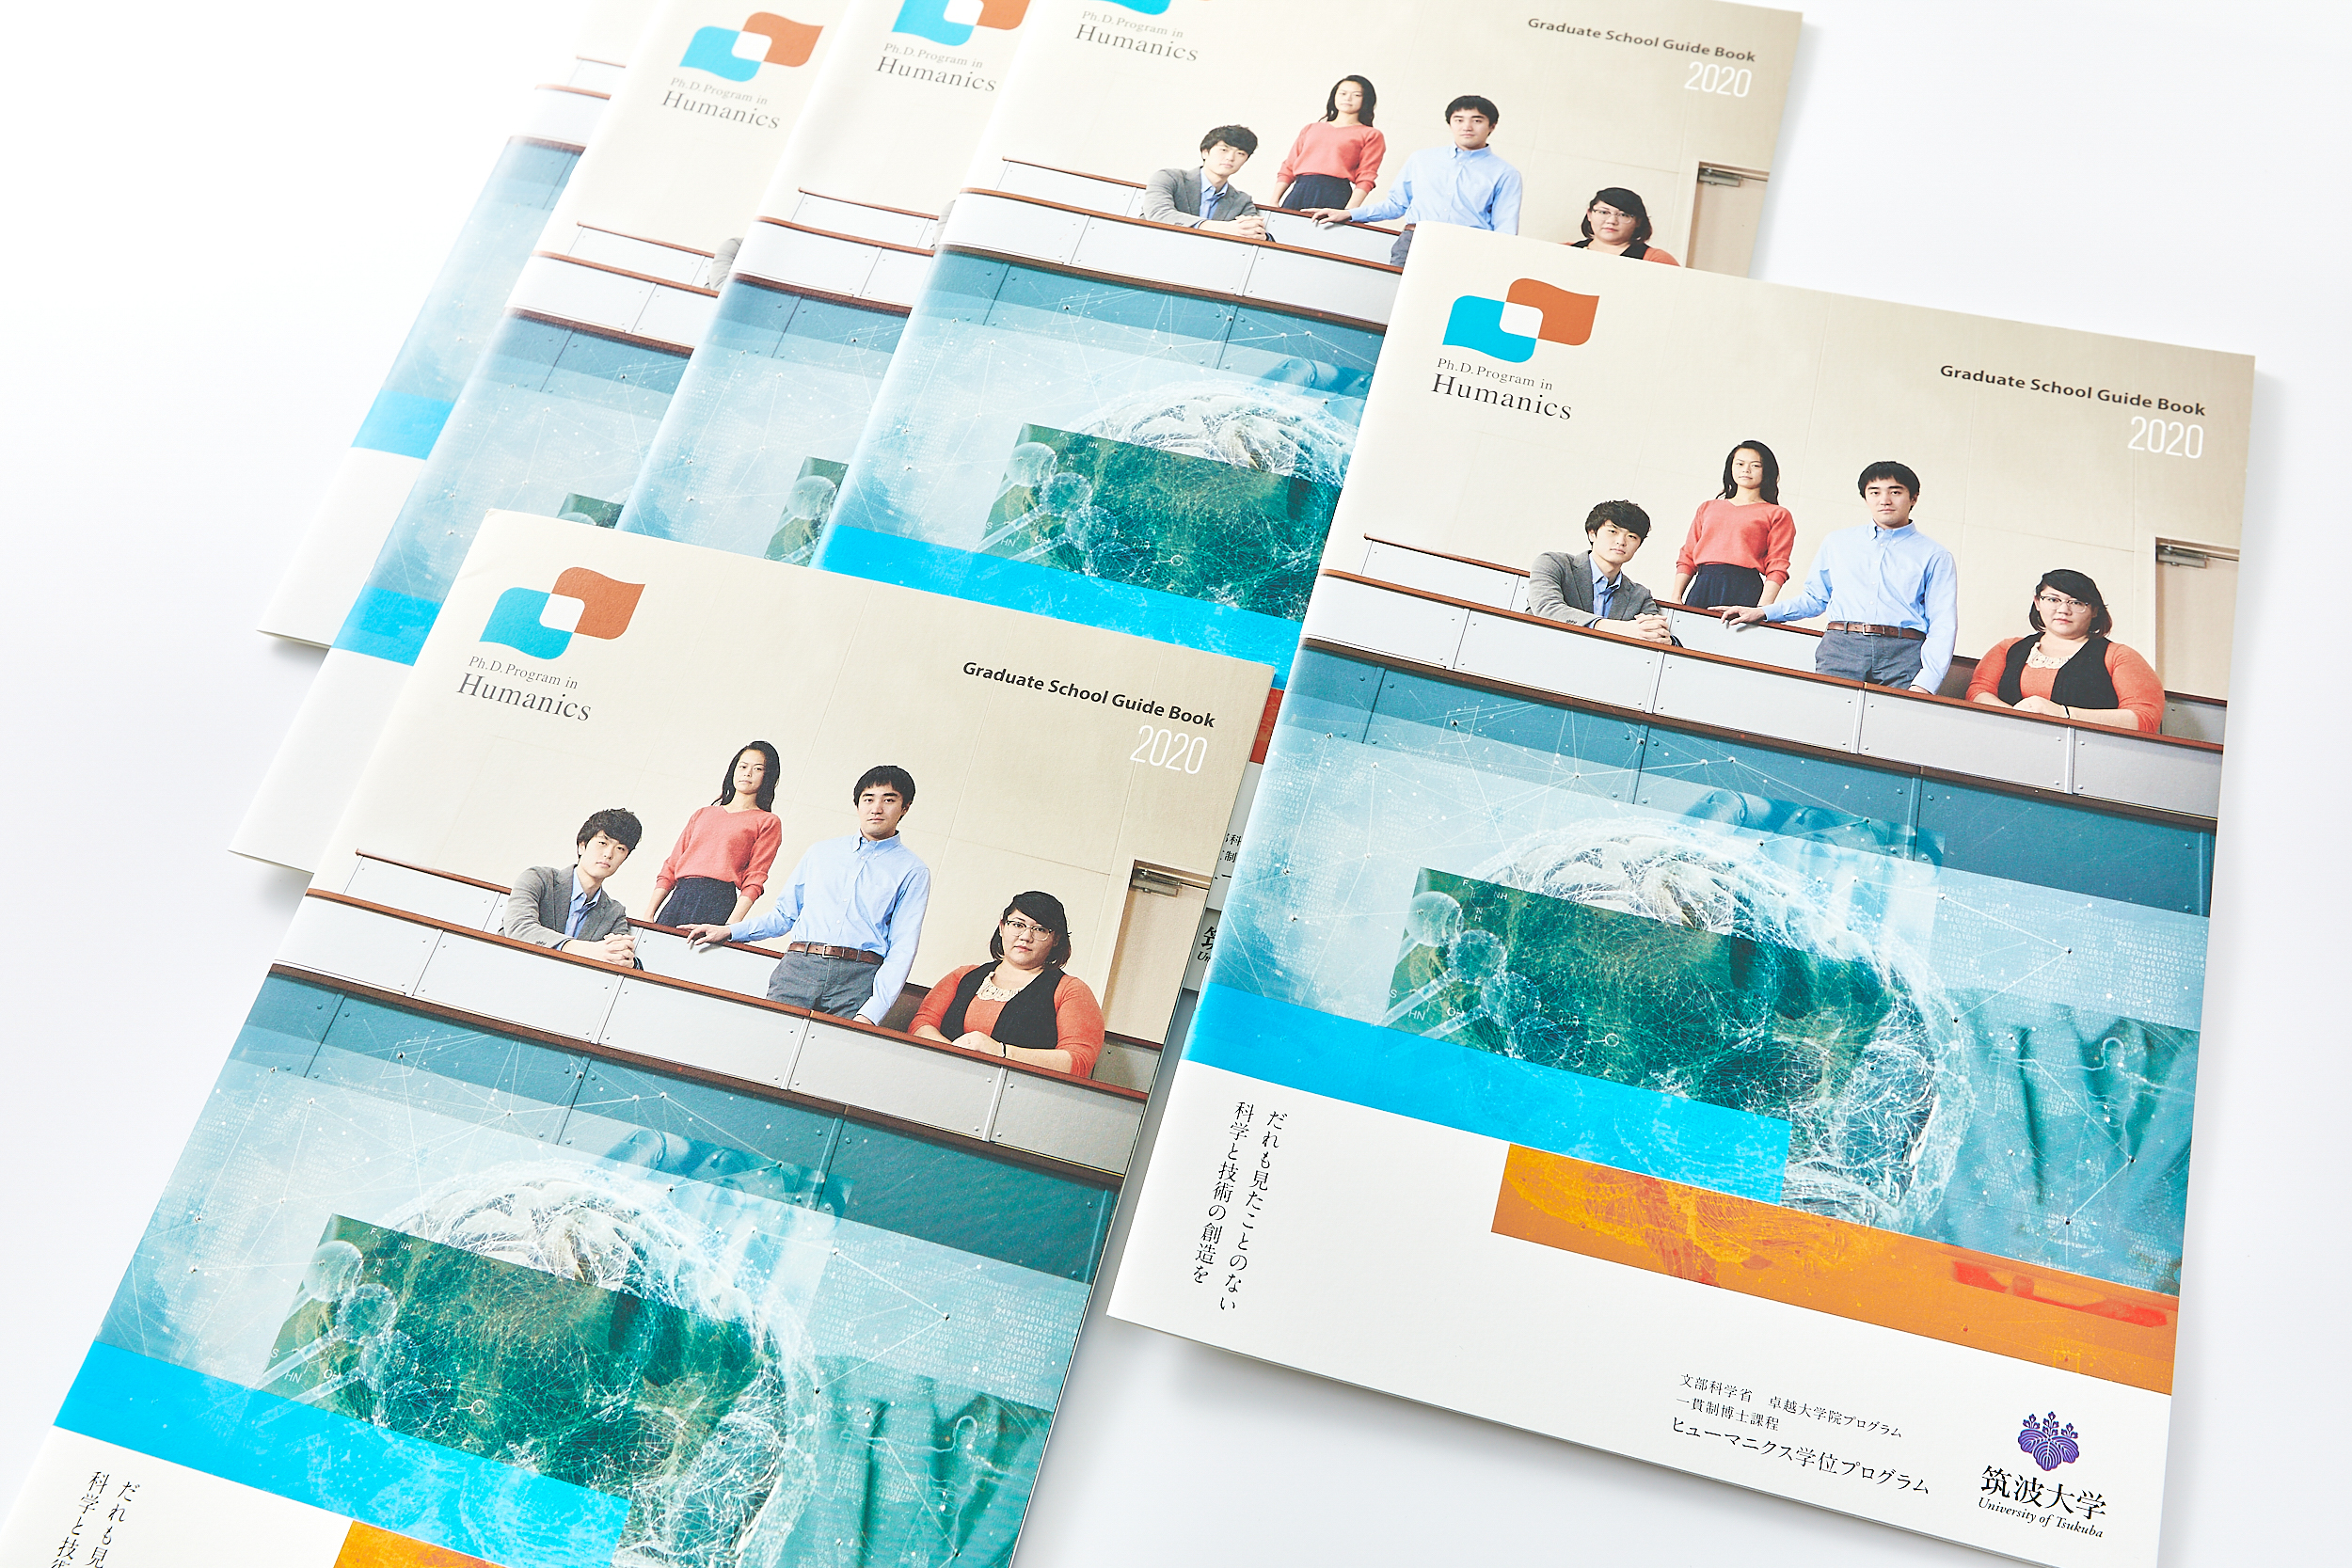 関東 パンフレットデザイン制作実績 複数コンペの100人のデザイナー